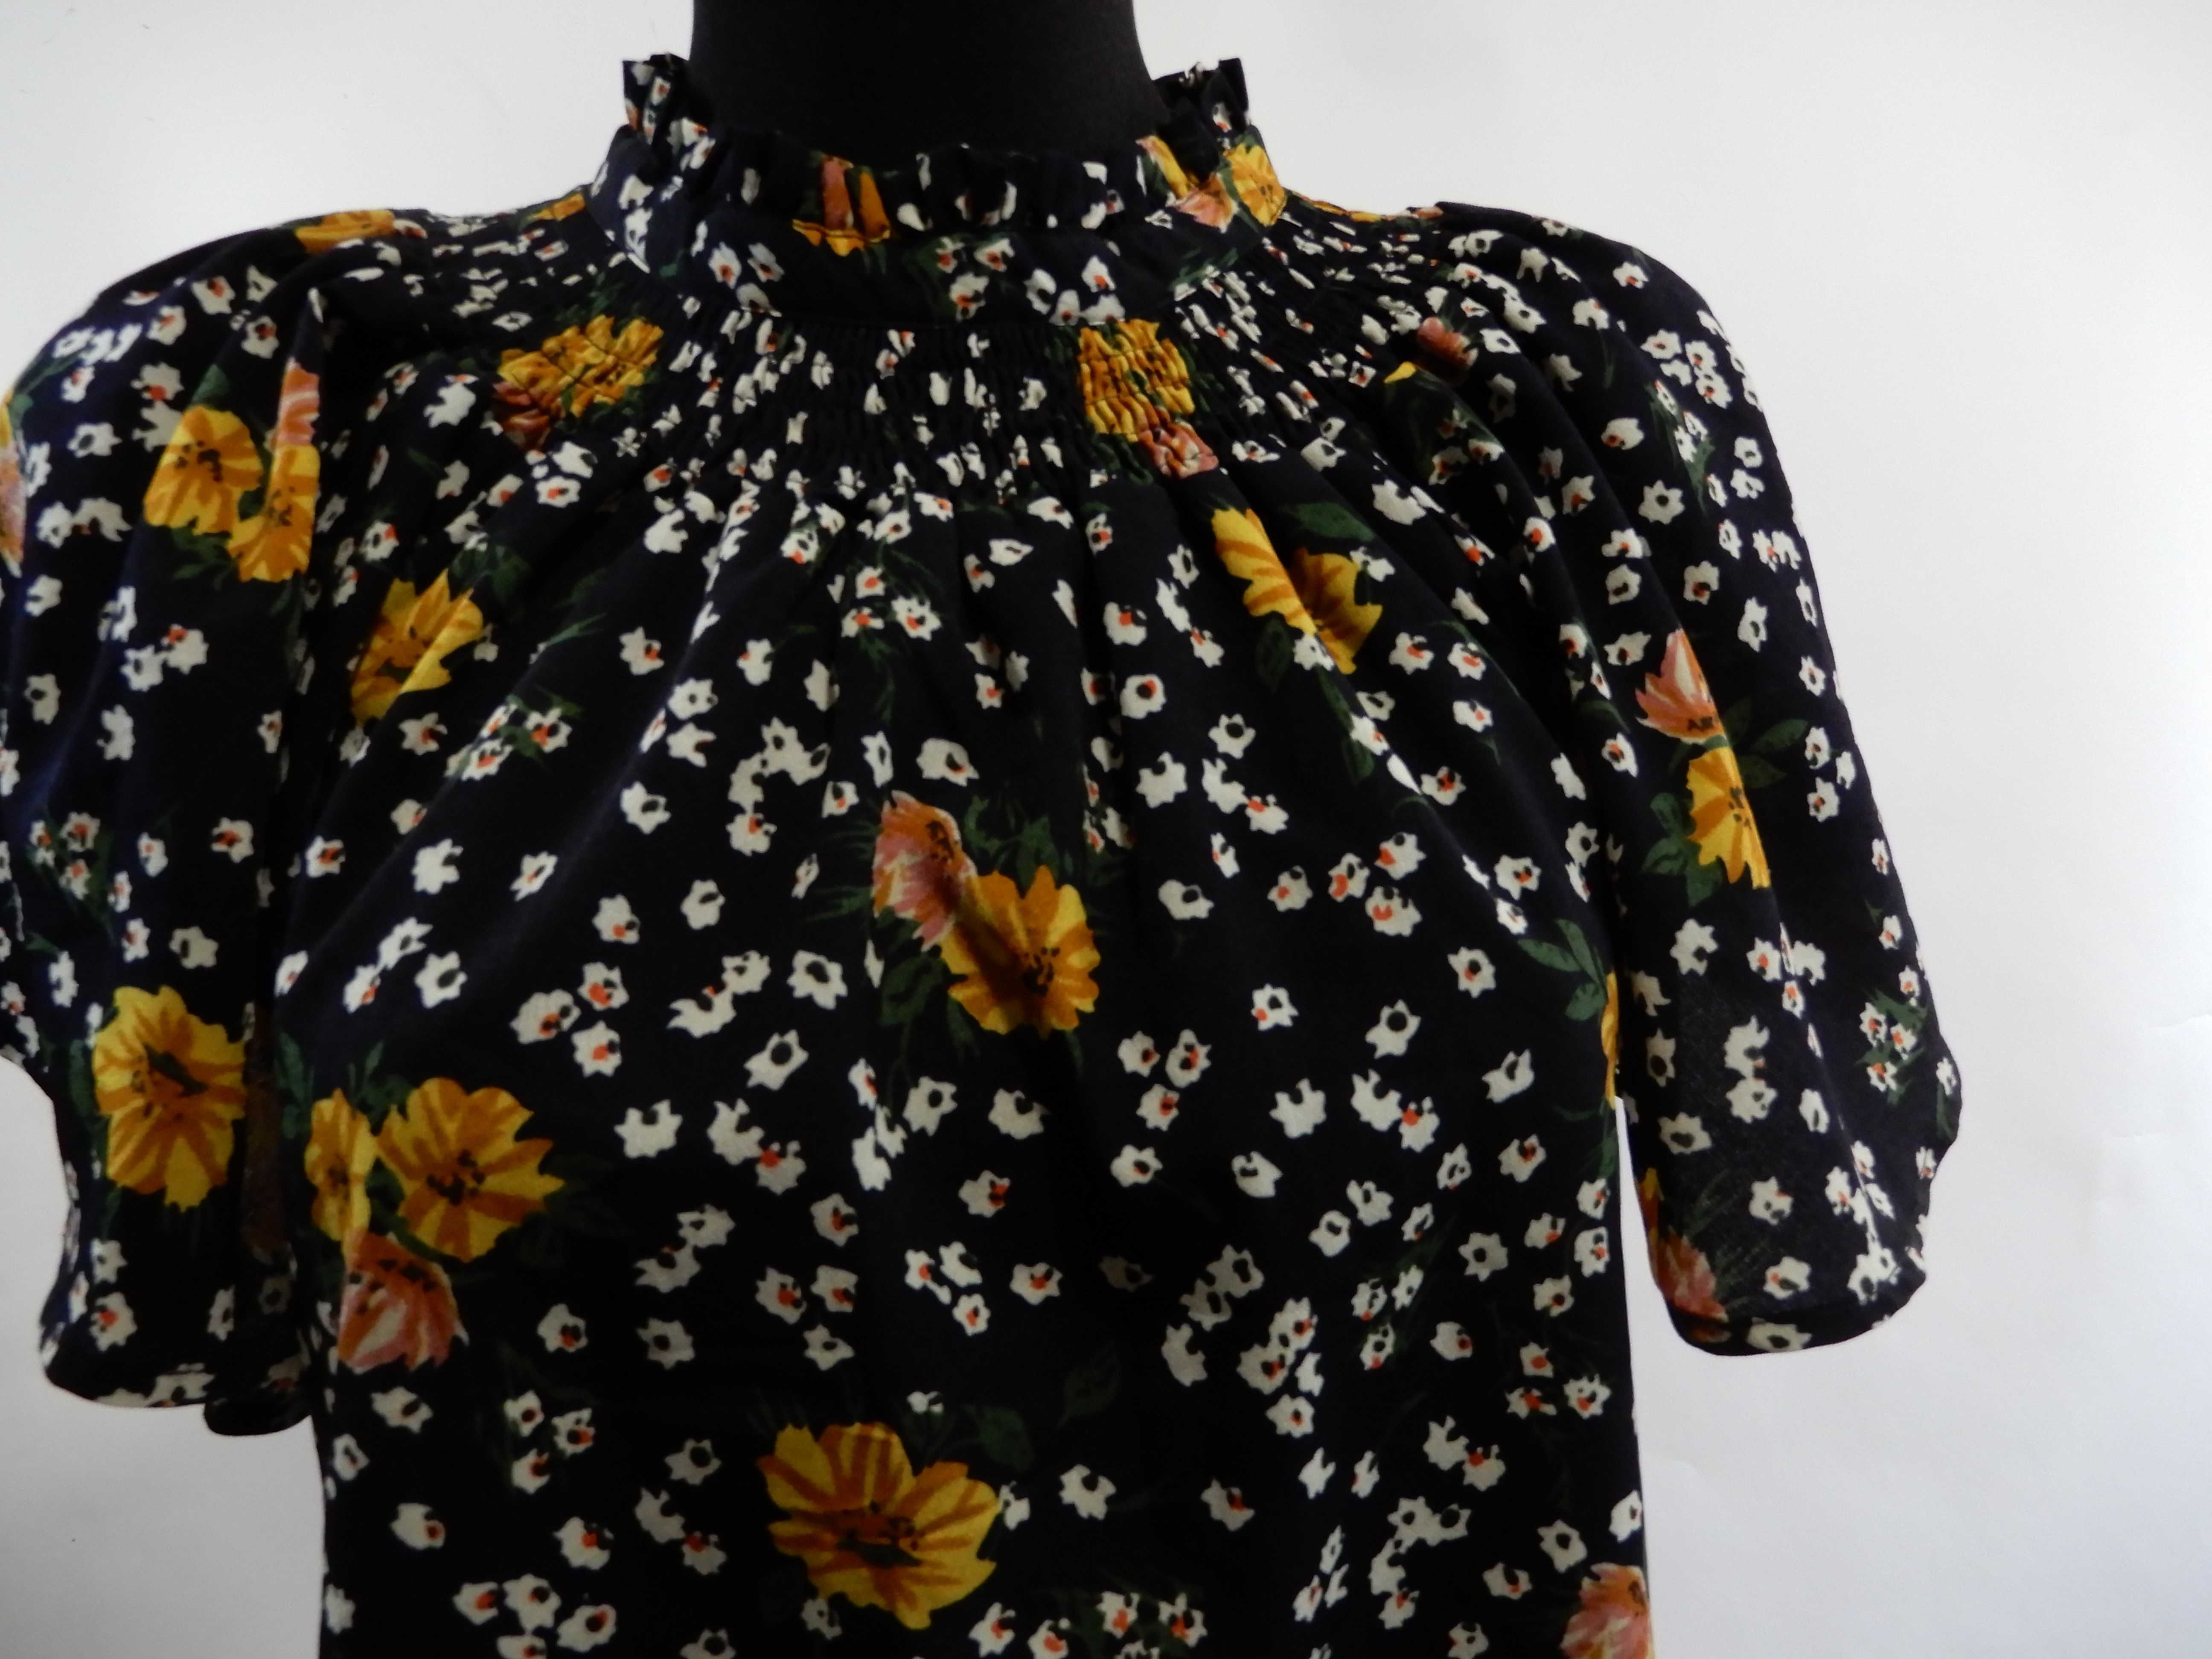 Bluzka z krótkim rękawem czarna kwiaty AX Paris 36 S